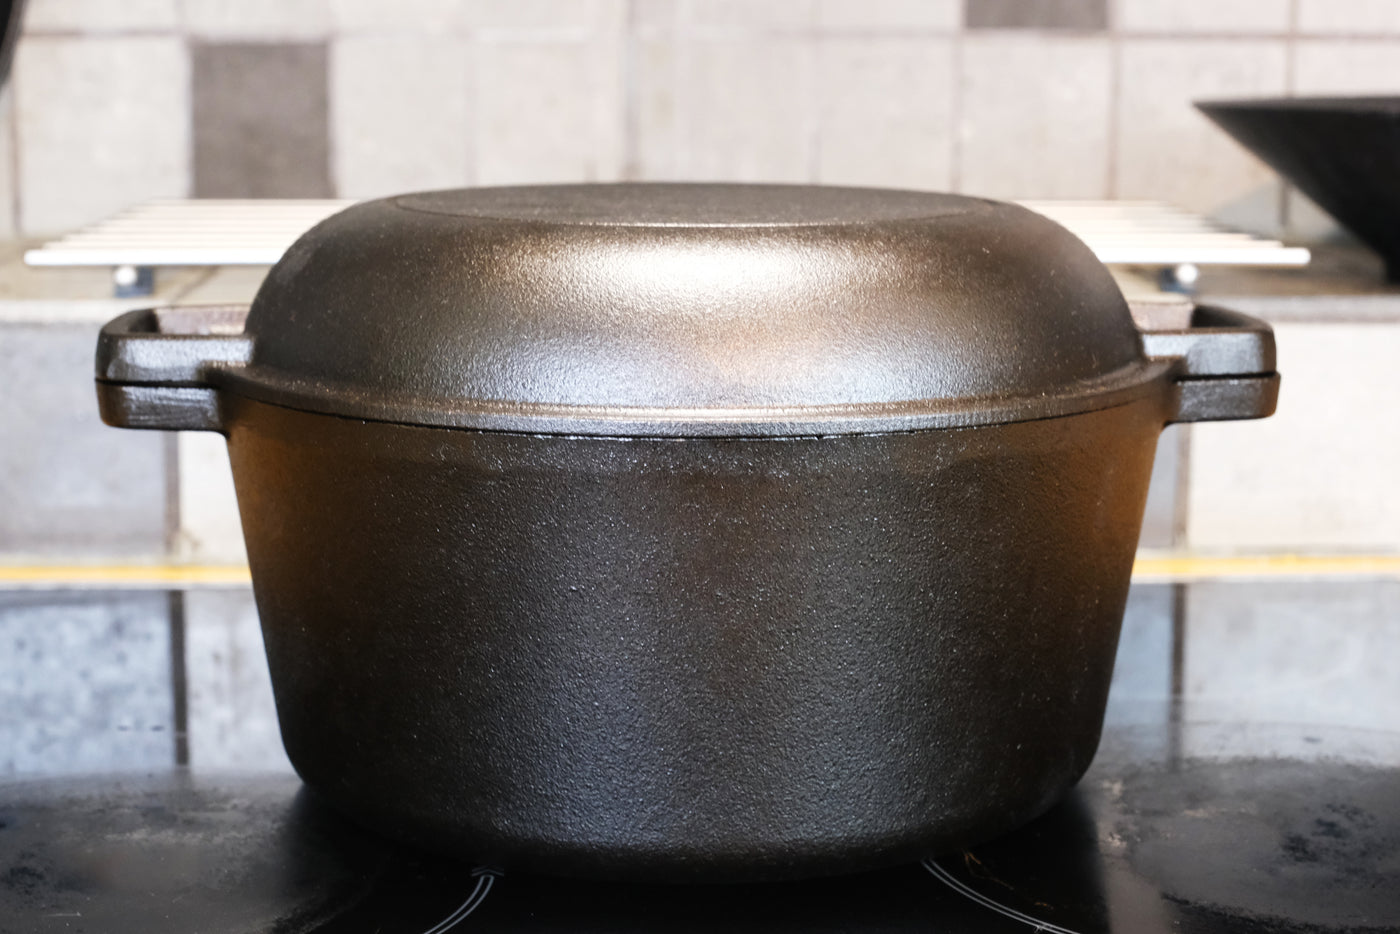 Gjutjärnsgryta med stekpanna i locket - 26 cm diameter, 4,8 L – Dutch oven, Stekgryta, för stekning, matlagning och bakning